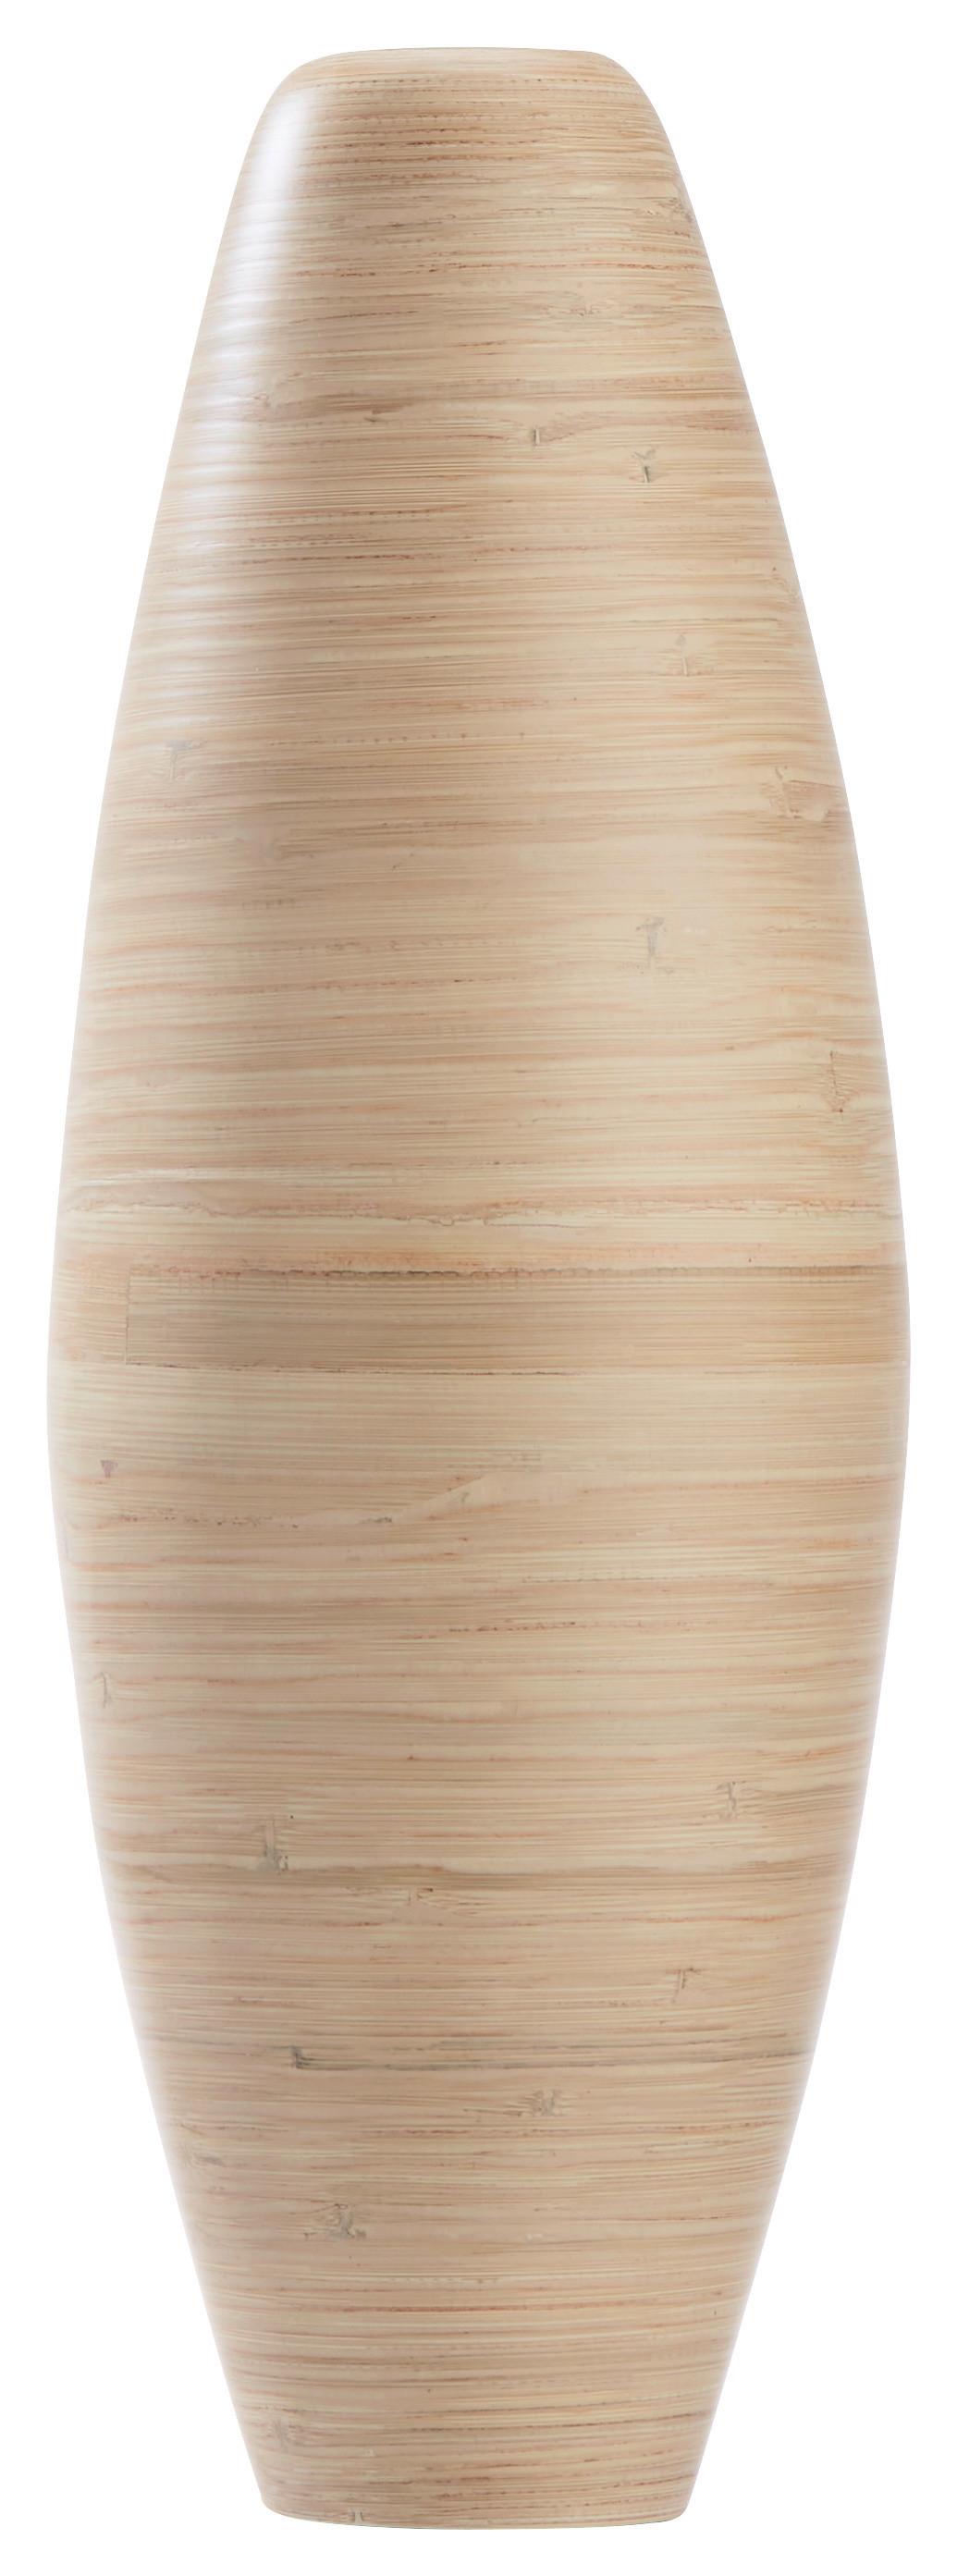 Váza Dekorační Diana, Ø/v: 22/65 Cm - přírodní barvy, Lifestyle, přírodní materiály (22/65cm) - Zandiara